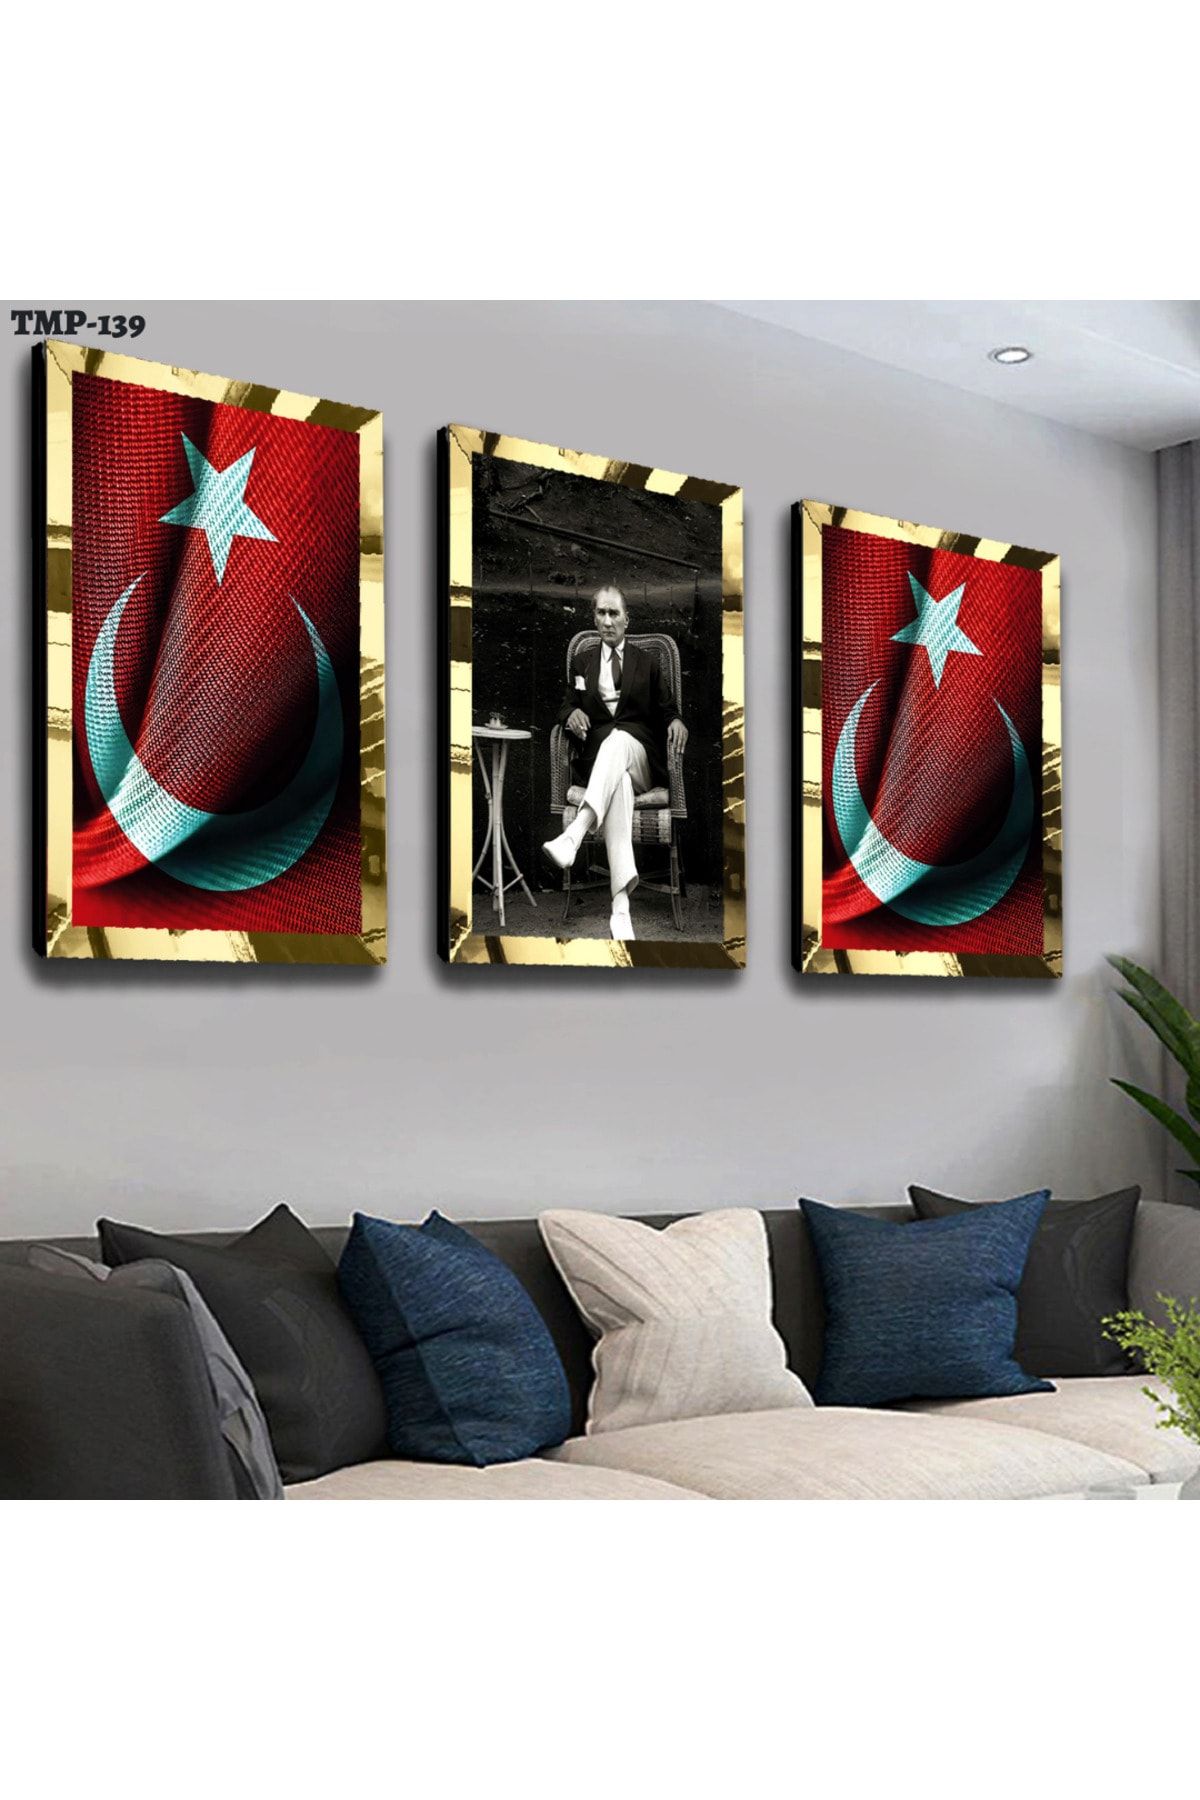 Zevahir Mobilya Dekorasyon Türk Bayrağı Ve Atatürk Gold Pleksili Mdf Tablo